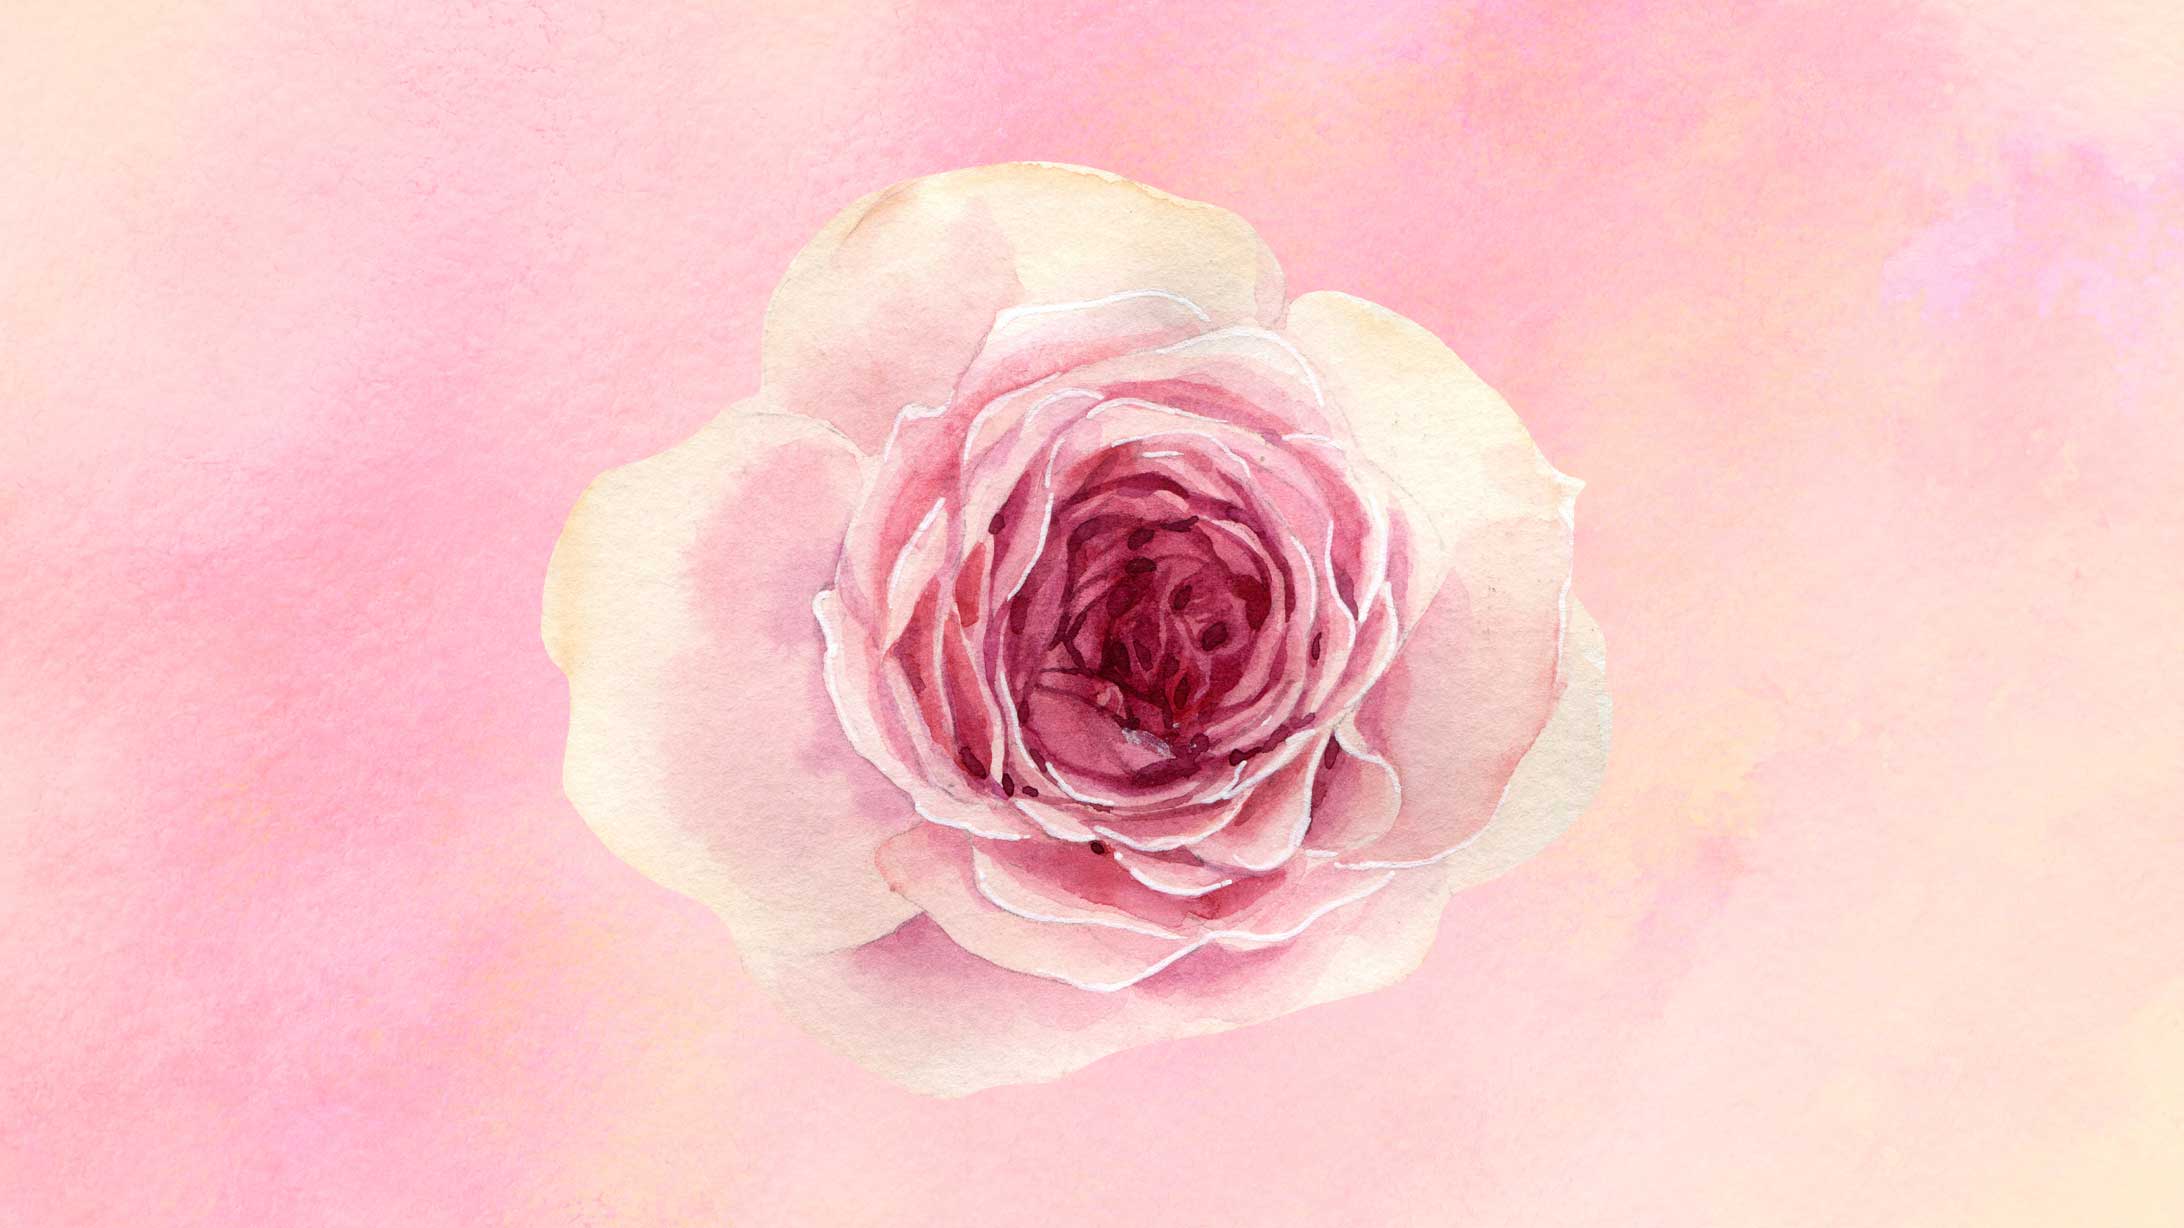 Das Bild zeigt eine gemalte, rosafarbene Rose. Beim Hypnobirthing soll man sich den Geburtsvorgang als eine sich öffnende Blume vorstellen.